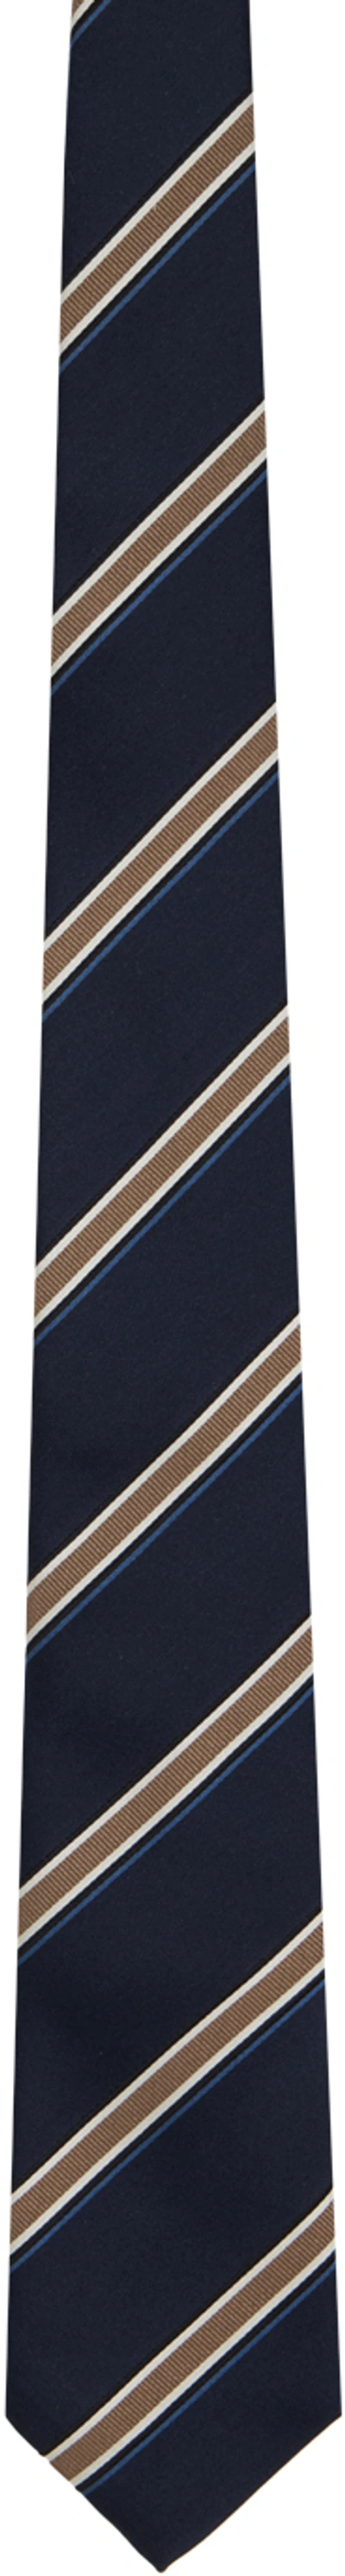 Brunello Cucinelli Navy Striped Tie In Blue